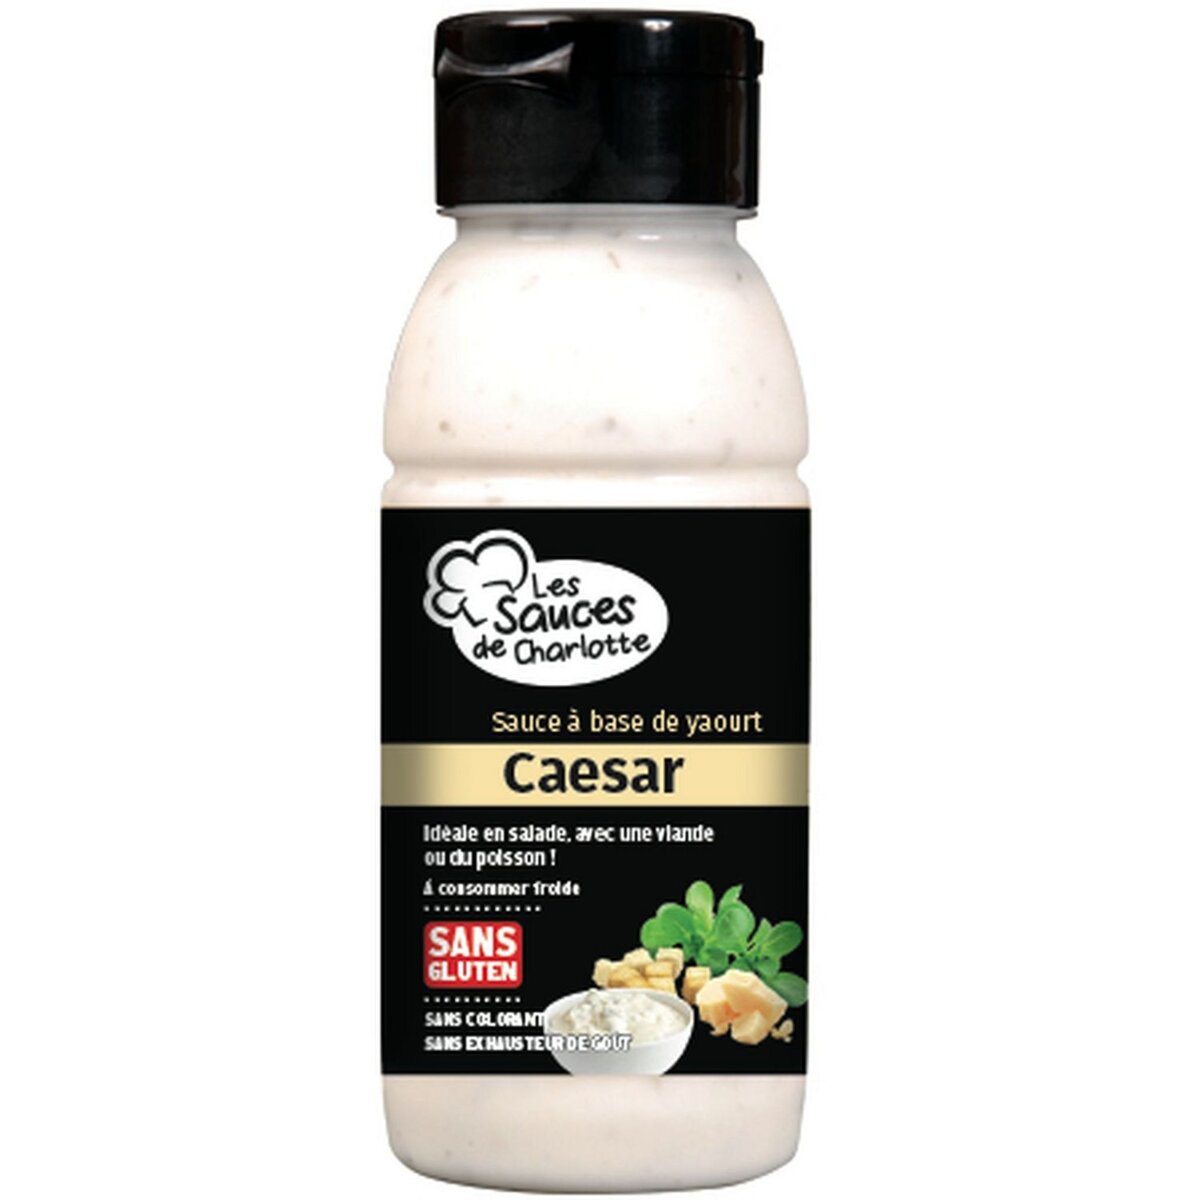 LES SAUCES DE CHARLOTTE Sauce caesar 250g